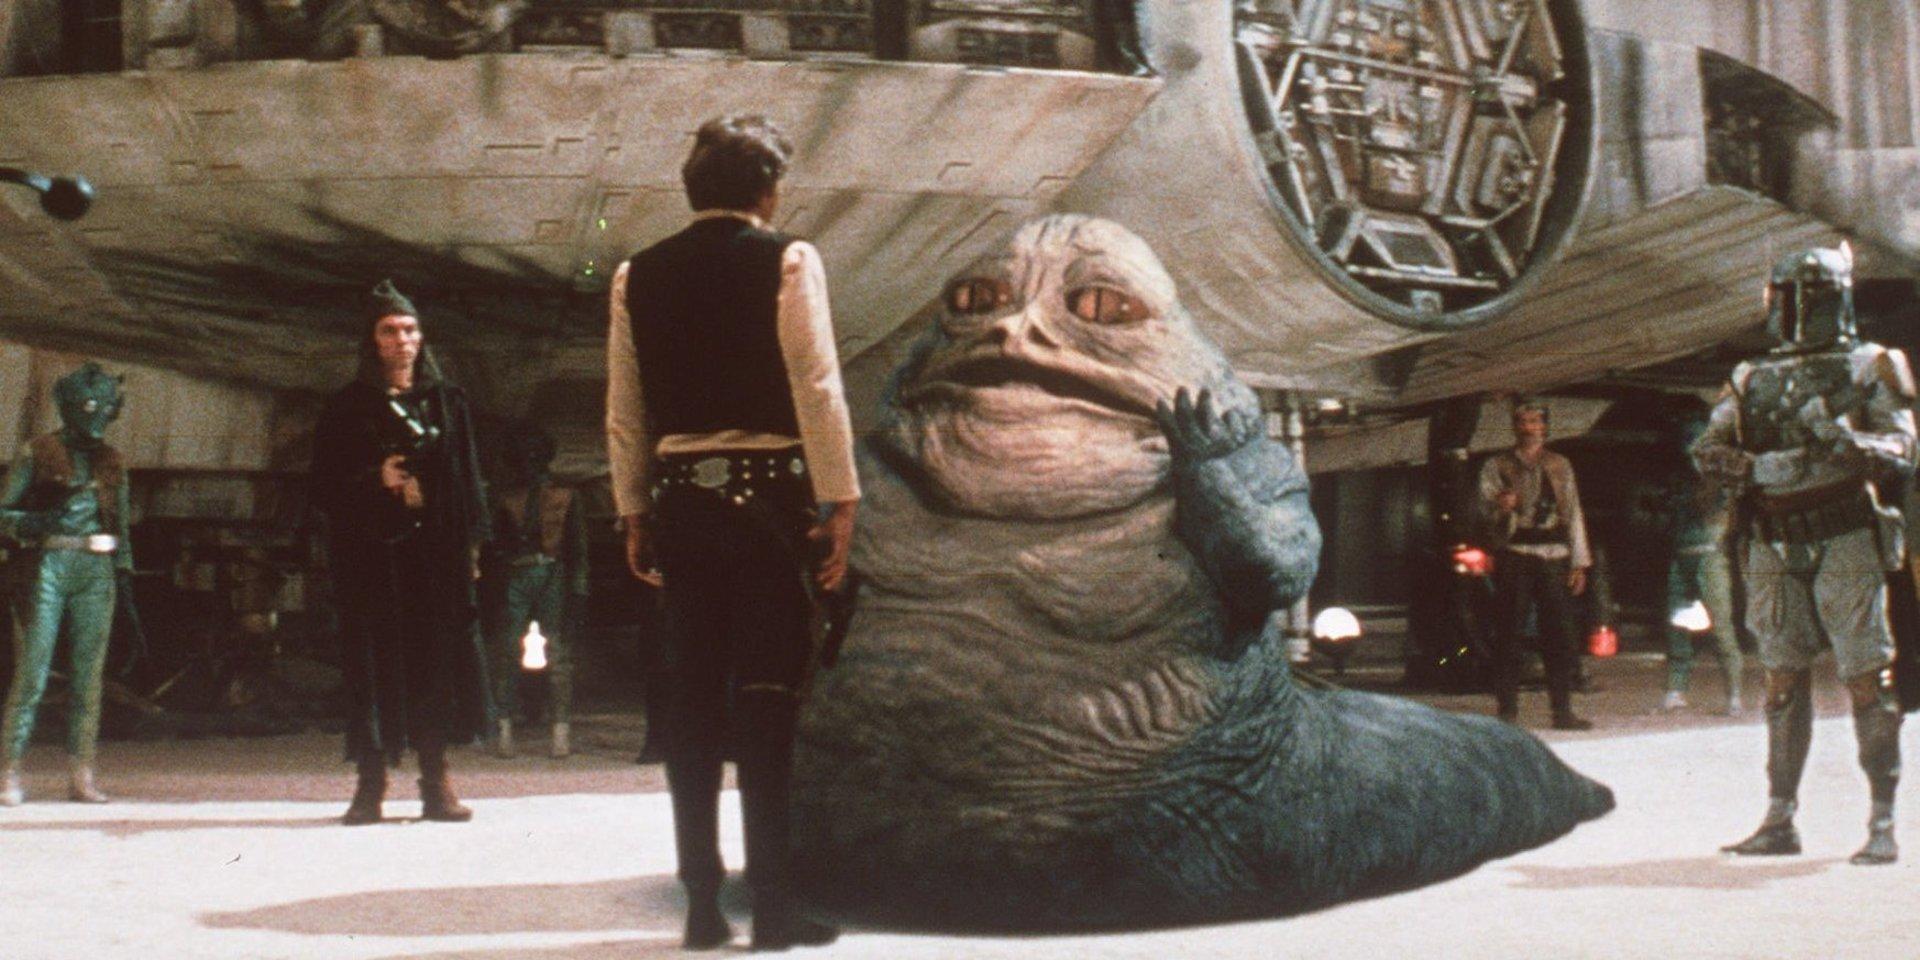 Star Wars svar på Wagner? Jabba the Hutt är en slemmig rymd-gangster i Star wars-filmerna som bär likheter med Ringencykeln, enligt Hanna Höglund.